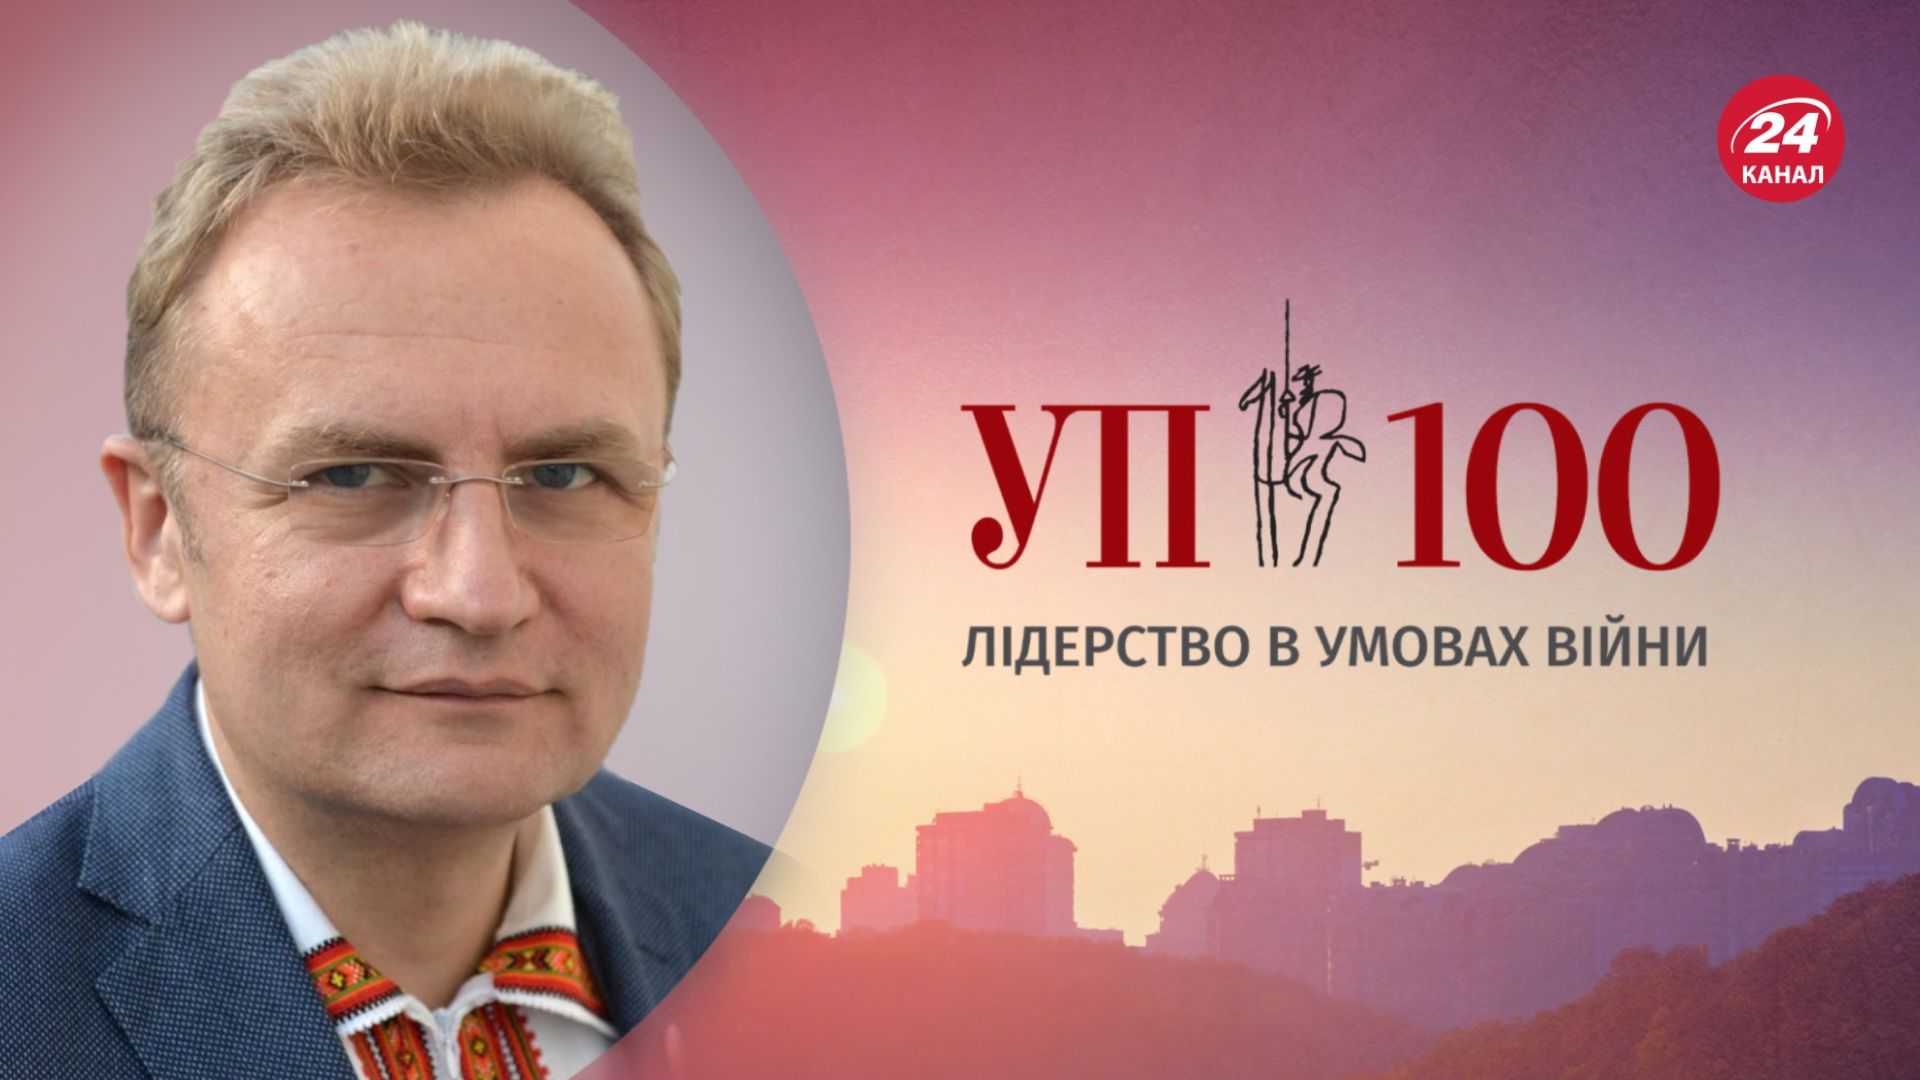 Андрій Садовий потрапив до рейтингу УП-100